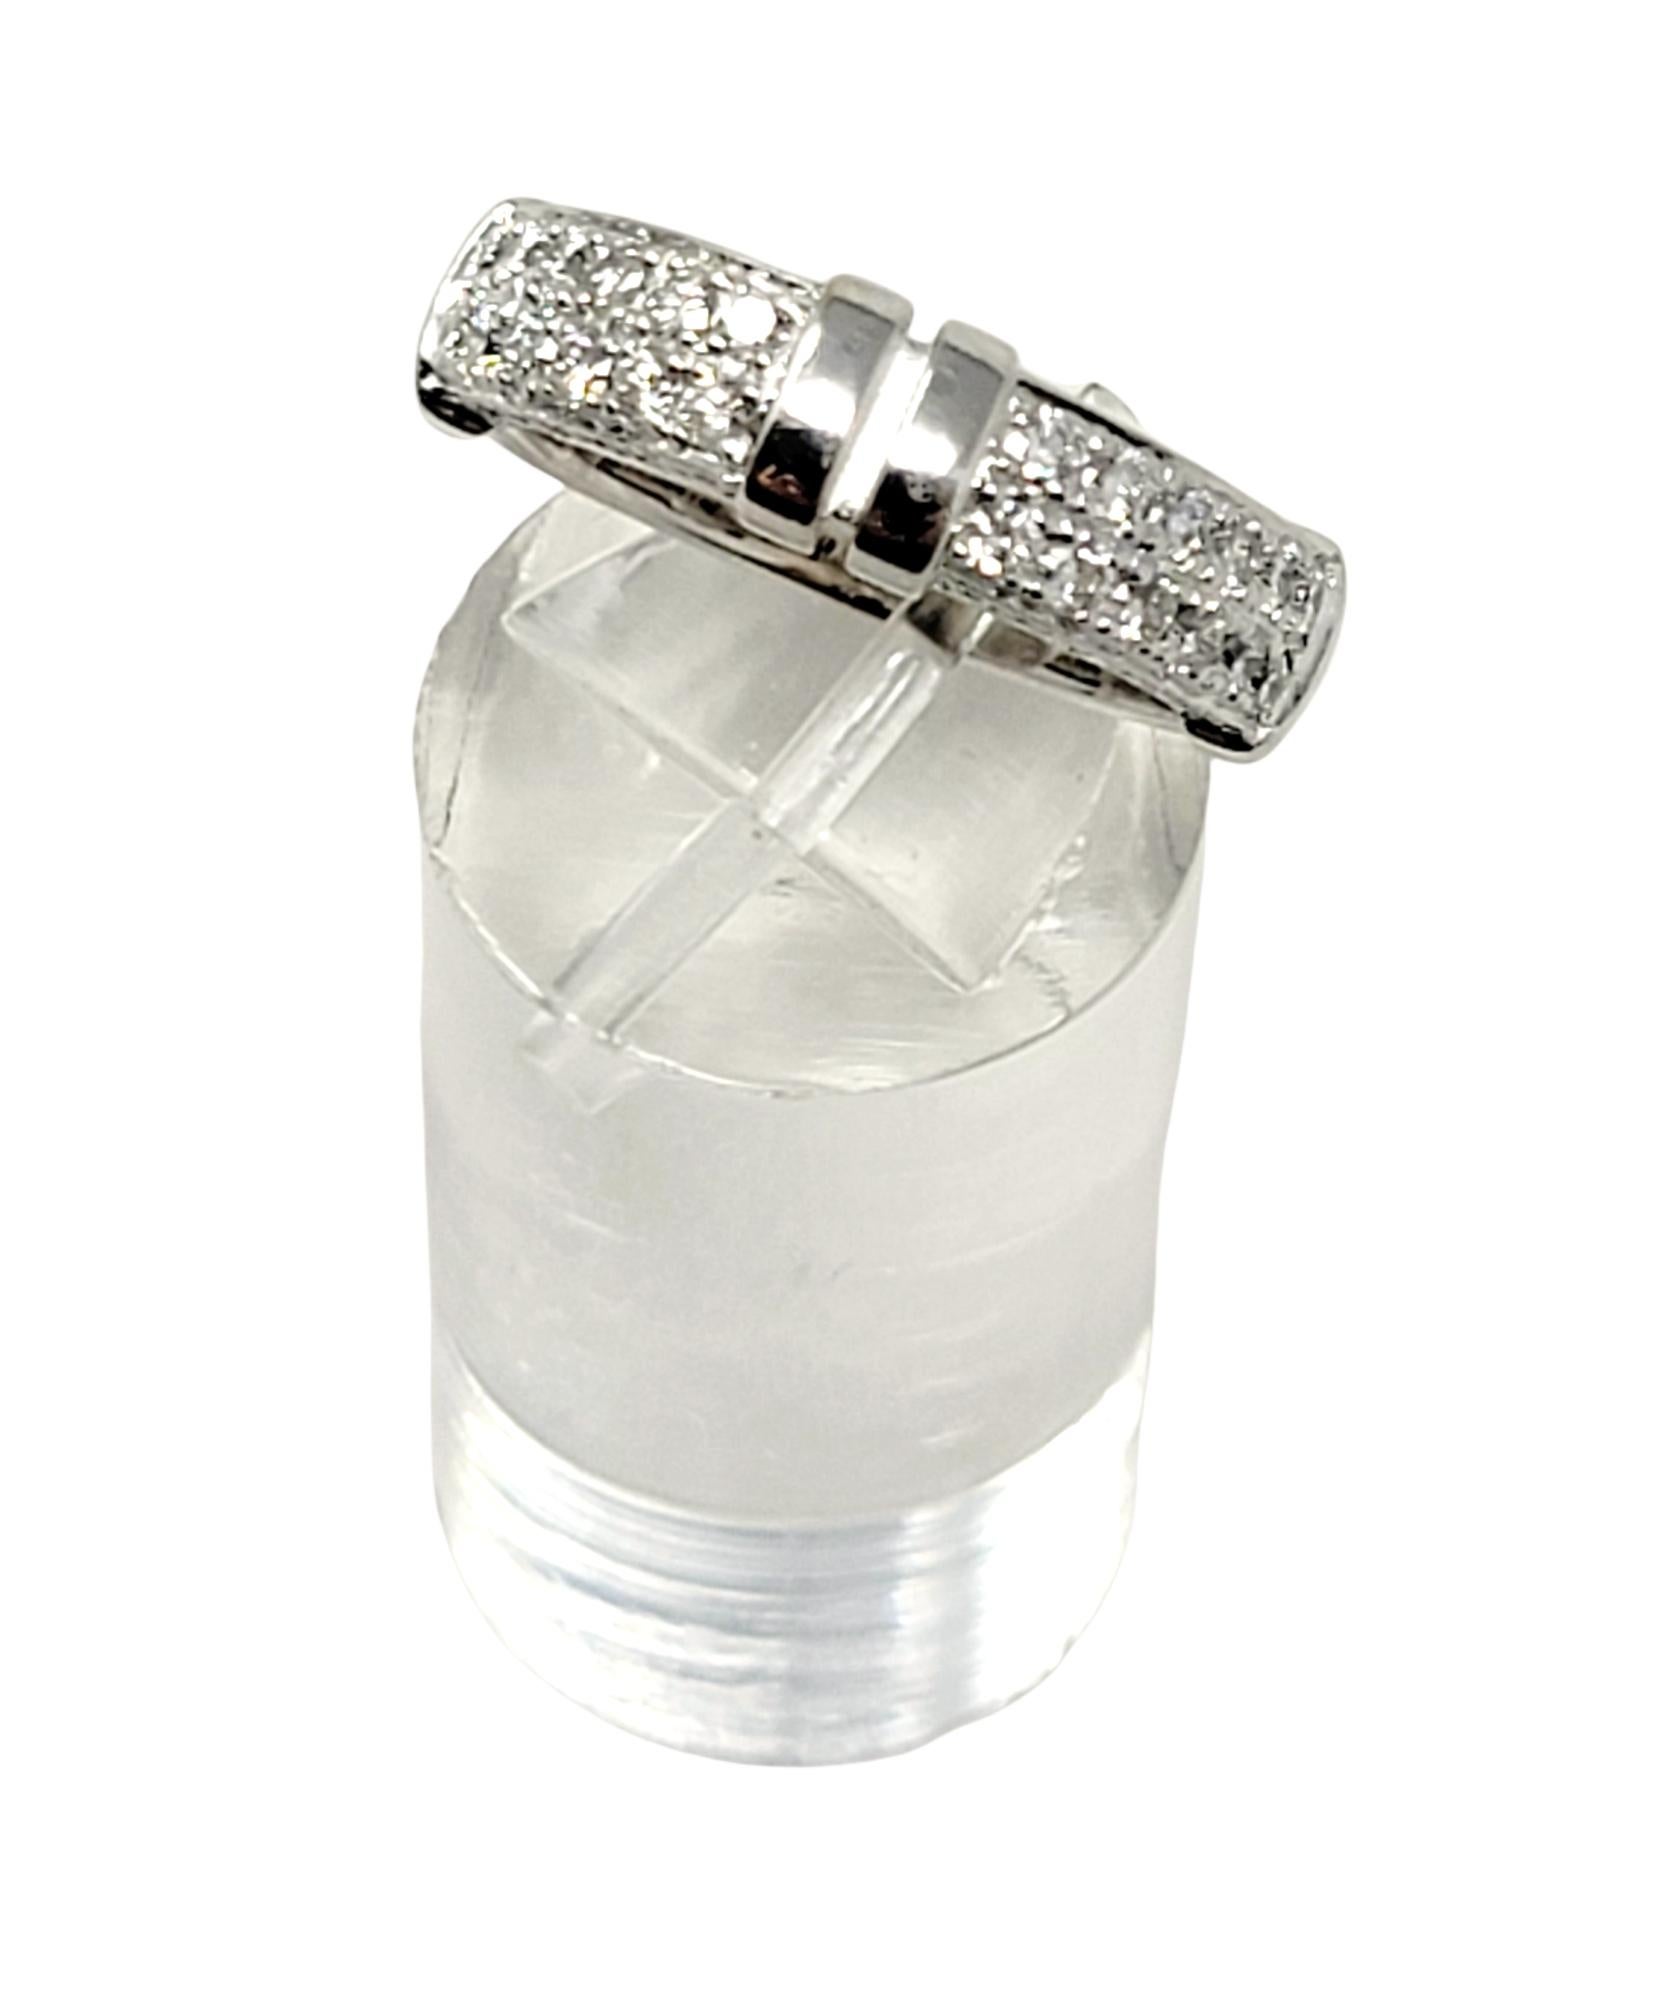 Di Modolo Quadria Pave Diamond Band Ring in 18 Karat White Gold .68 Carat Total For Sale 3